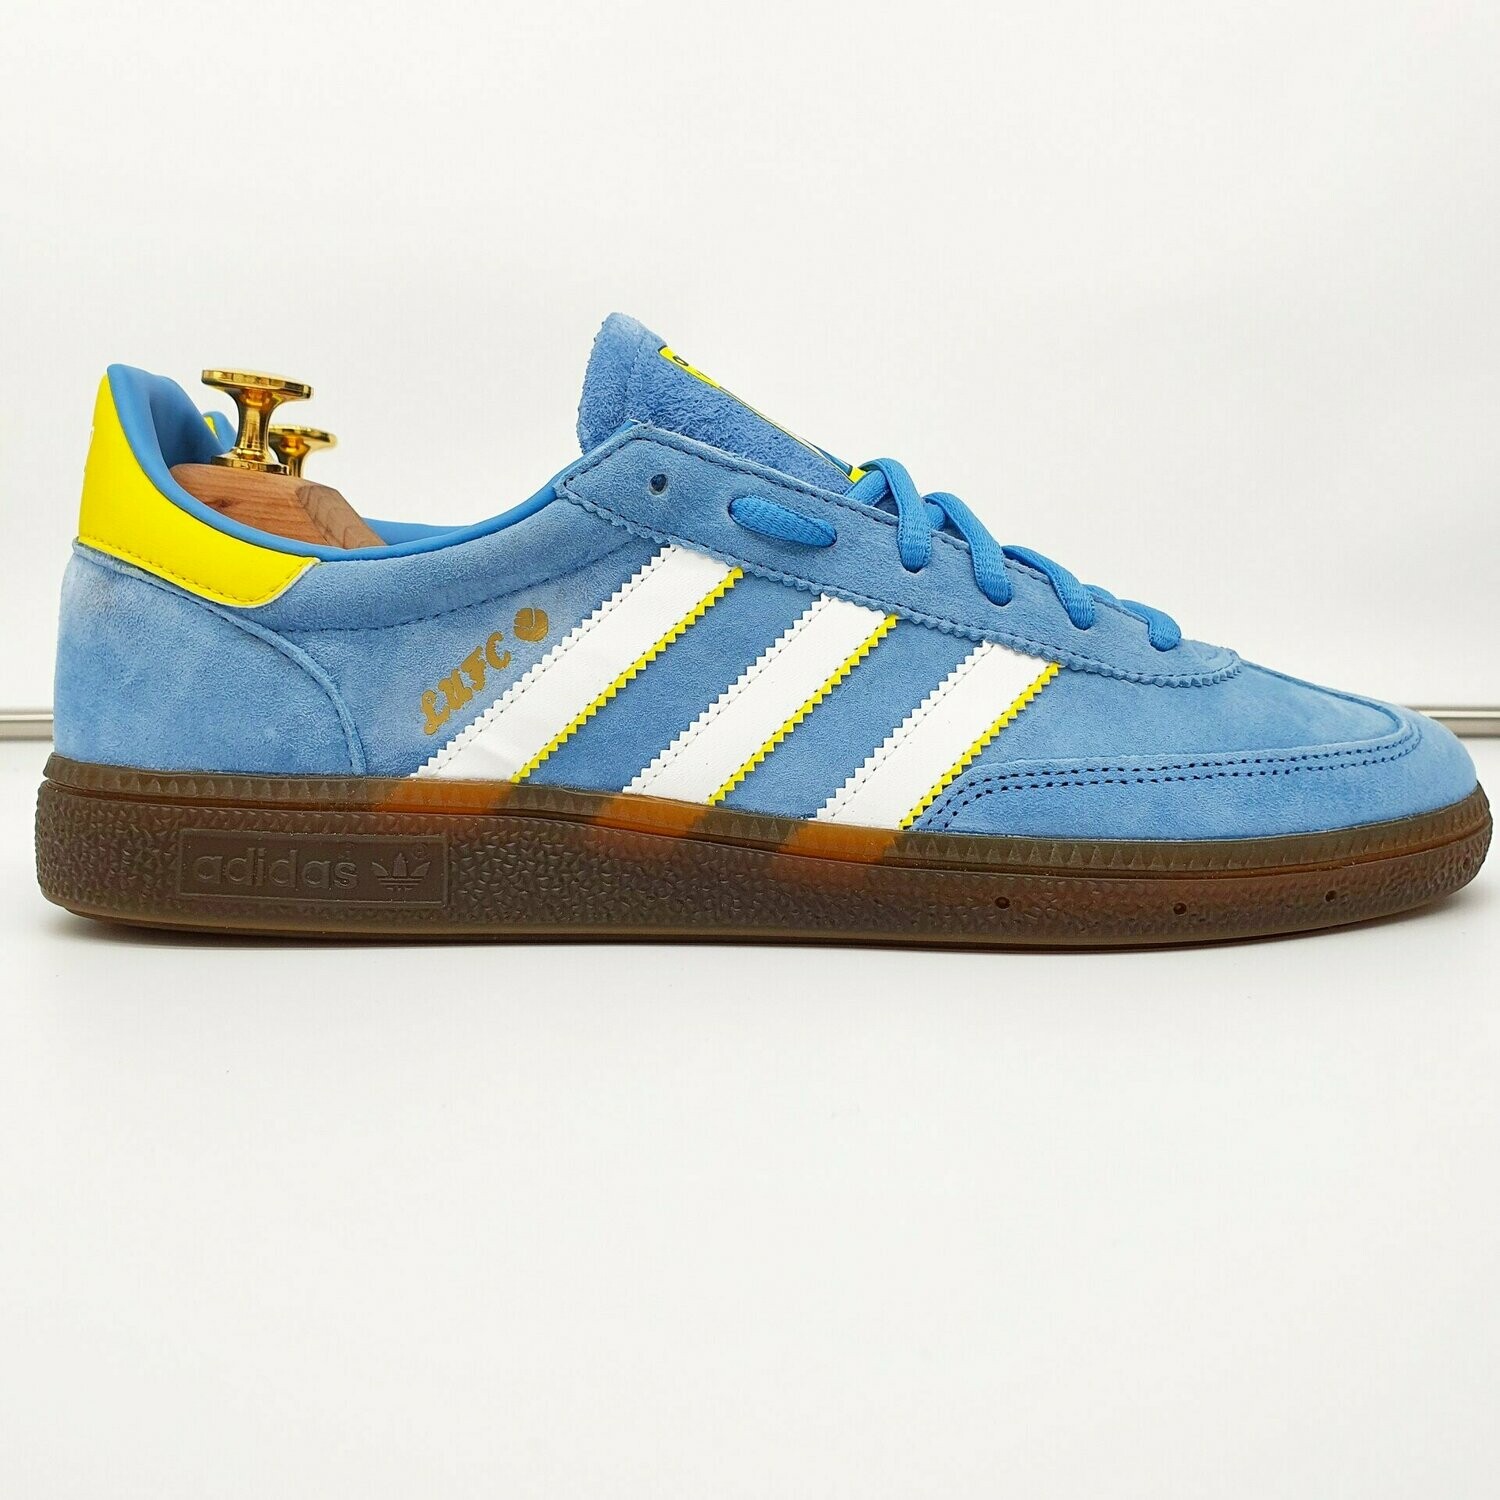 Leeds United Adidas Custom